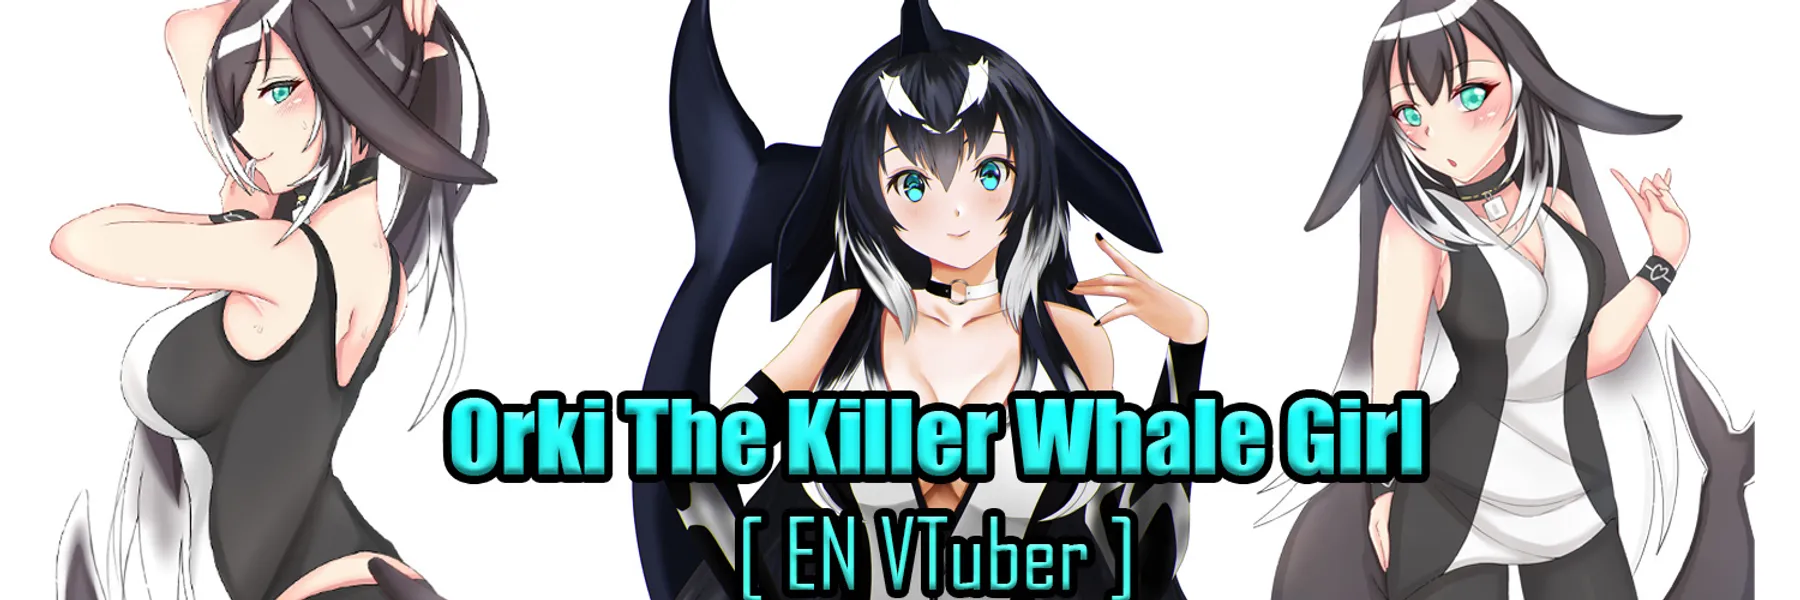 Spoiler - Black Killer Whale Baby | Novel Updates Forum